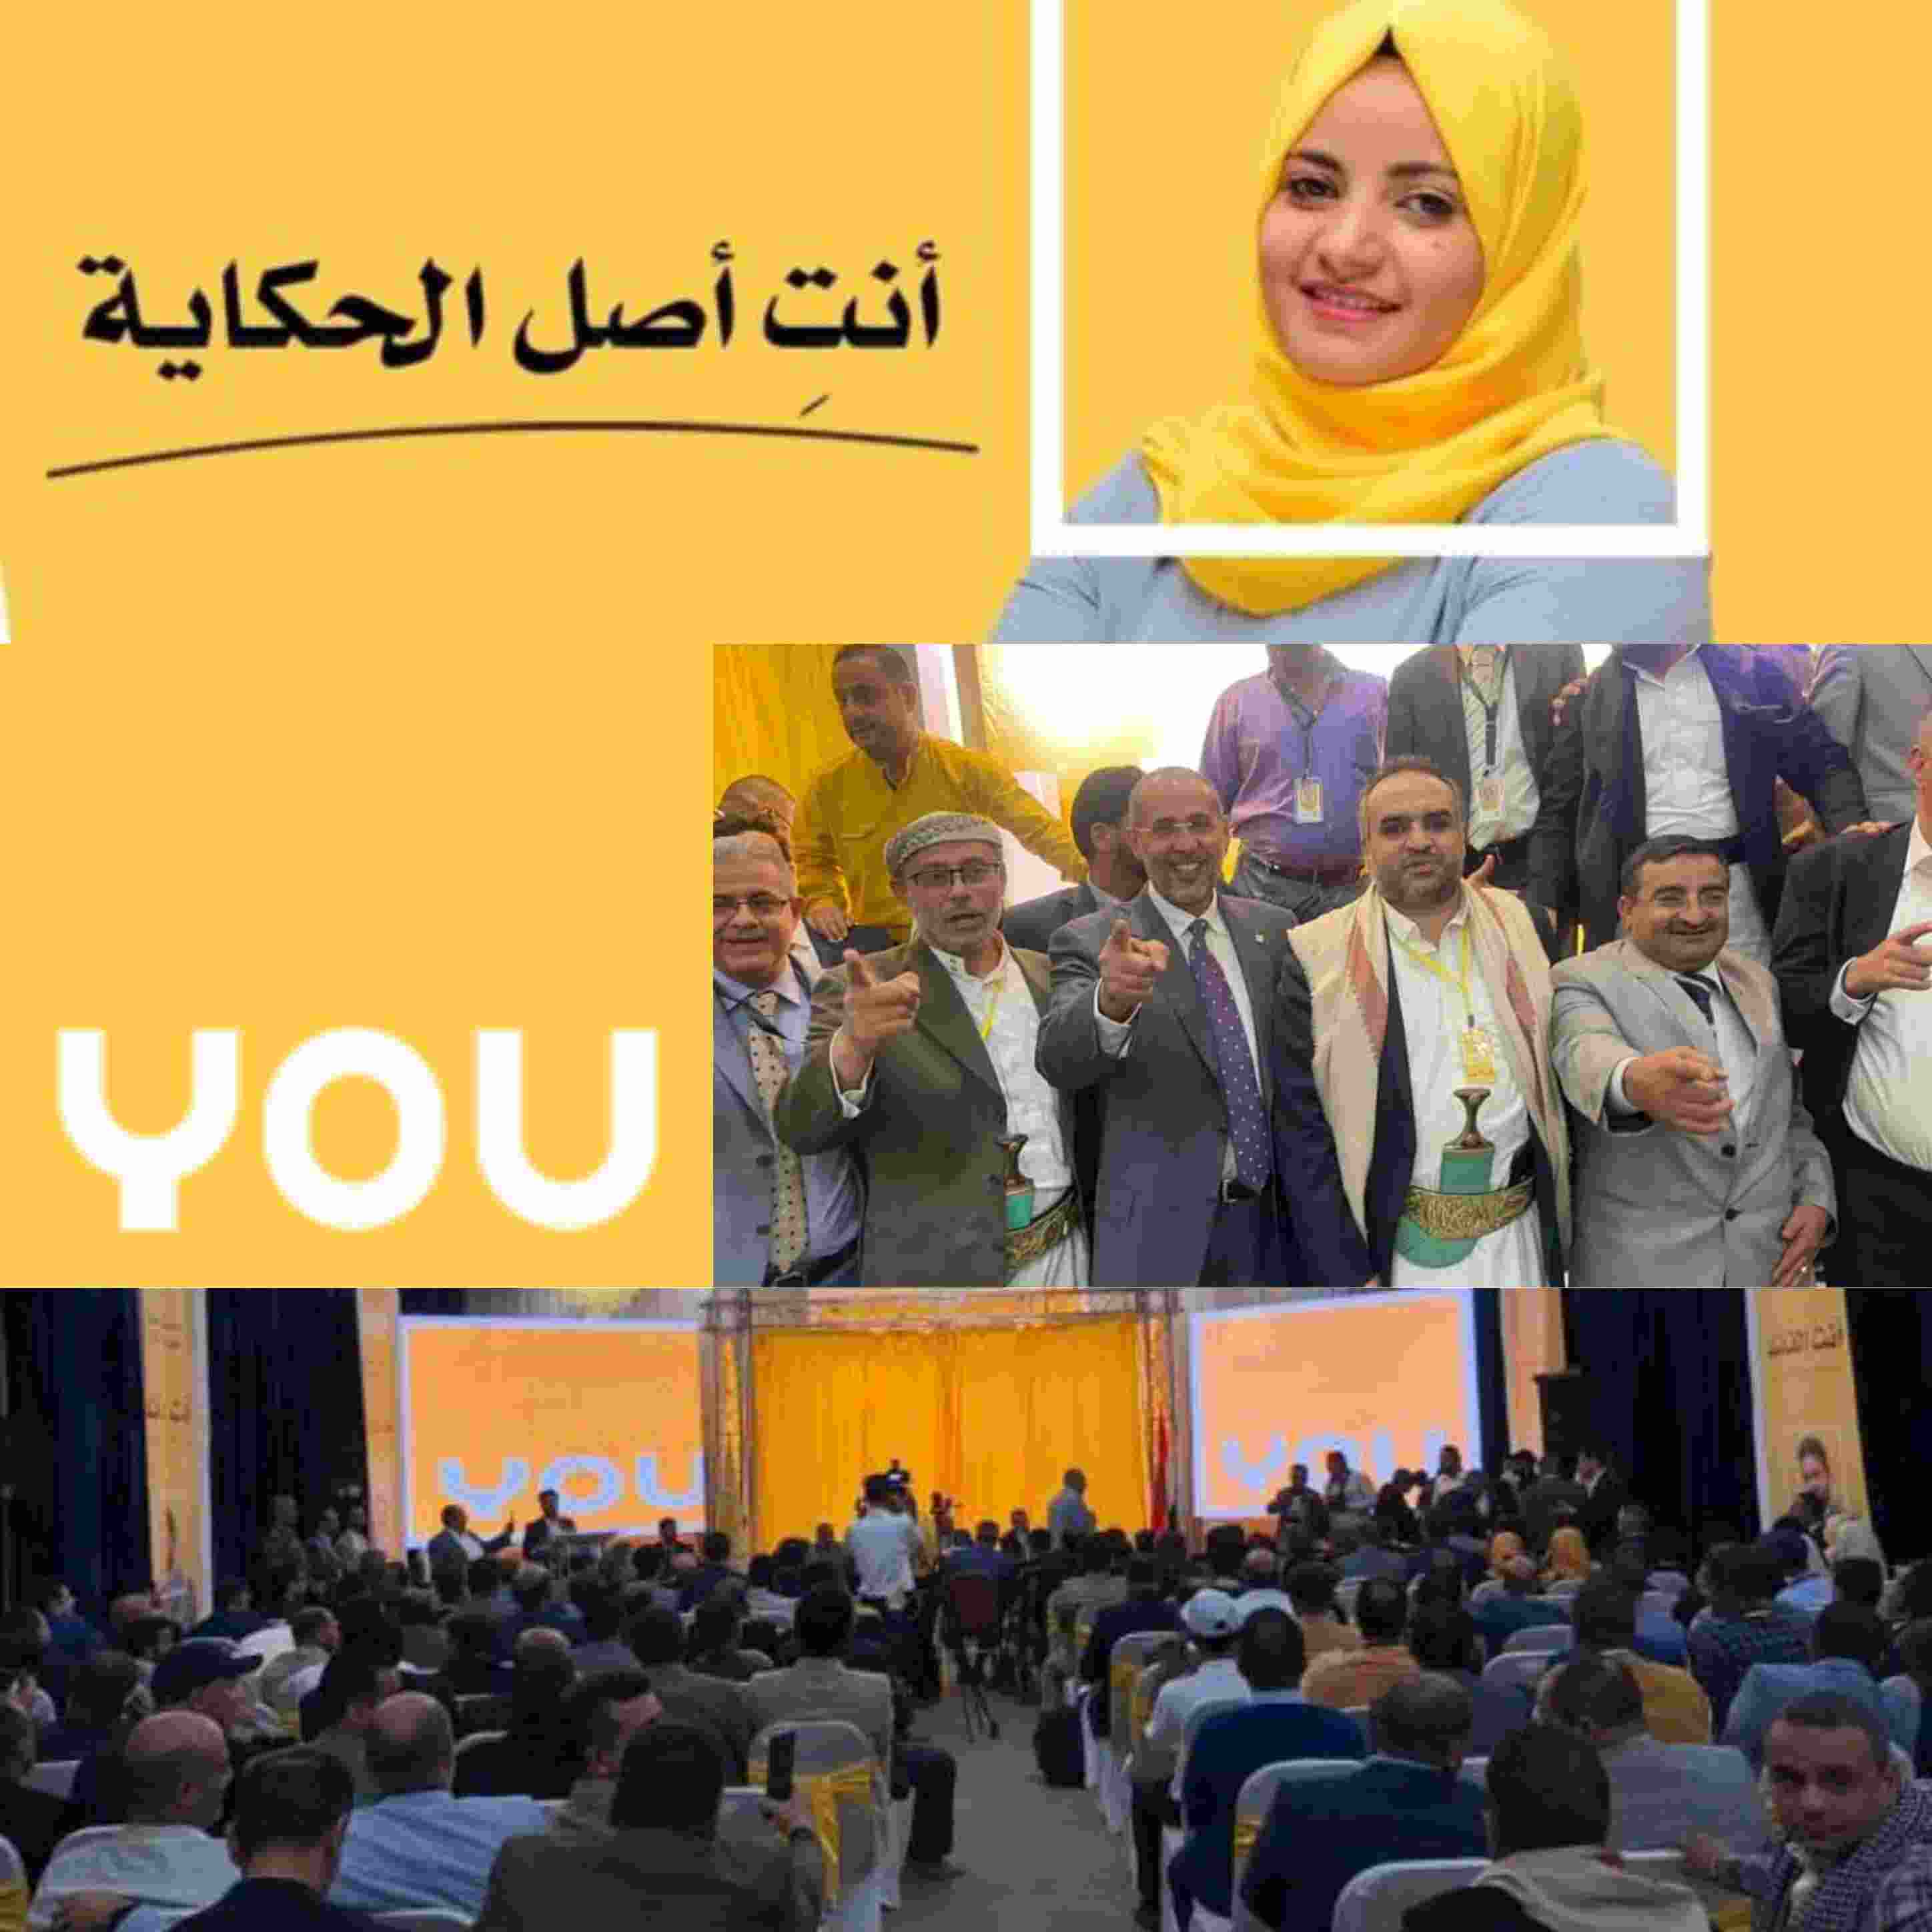 في مؤتمر صحفي اطلاق اسم العلامة التجارية لشركة you اليمنية العمانية للإتصالات بصنعاء